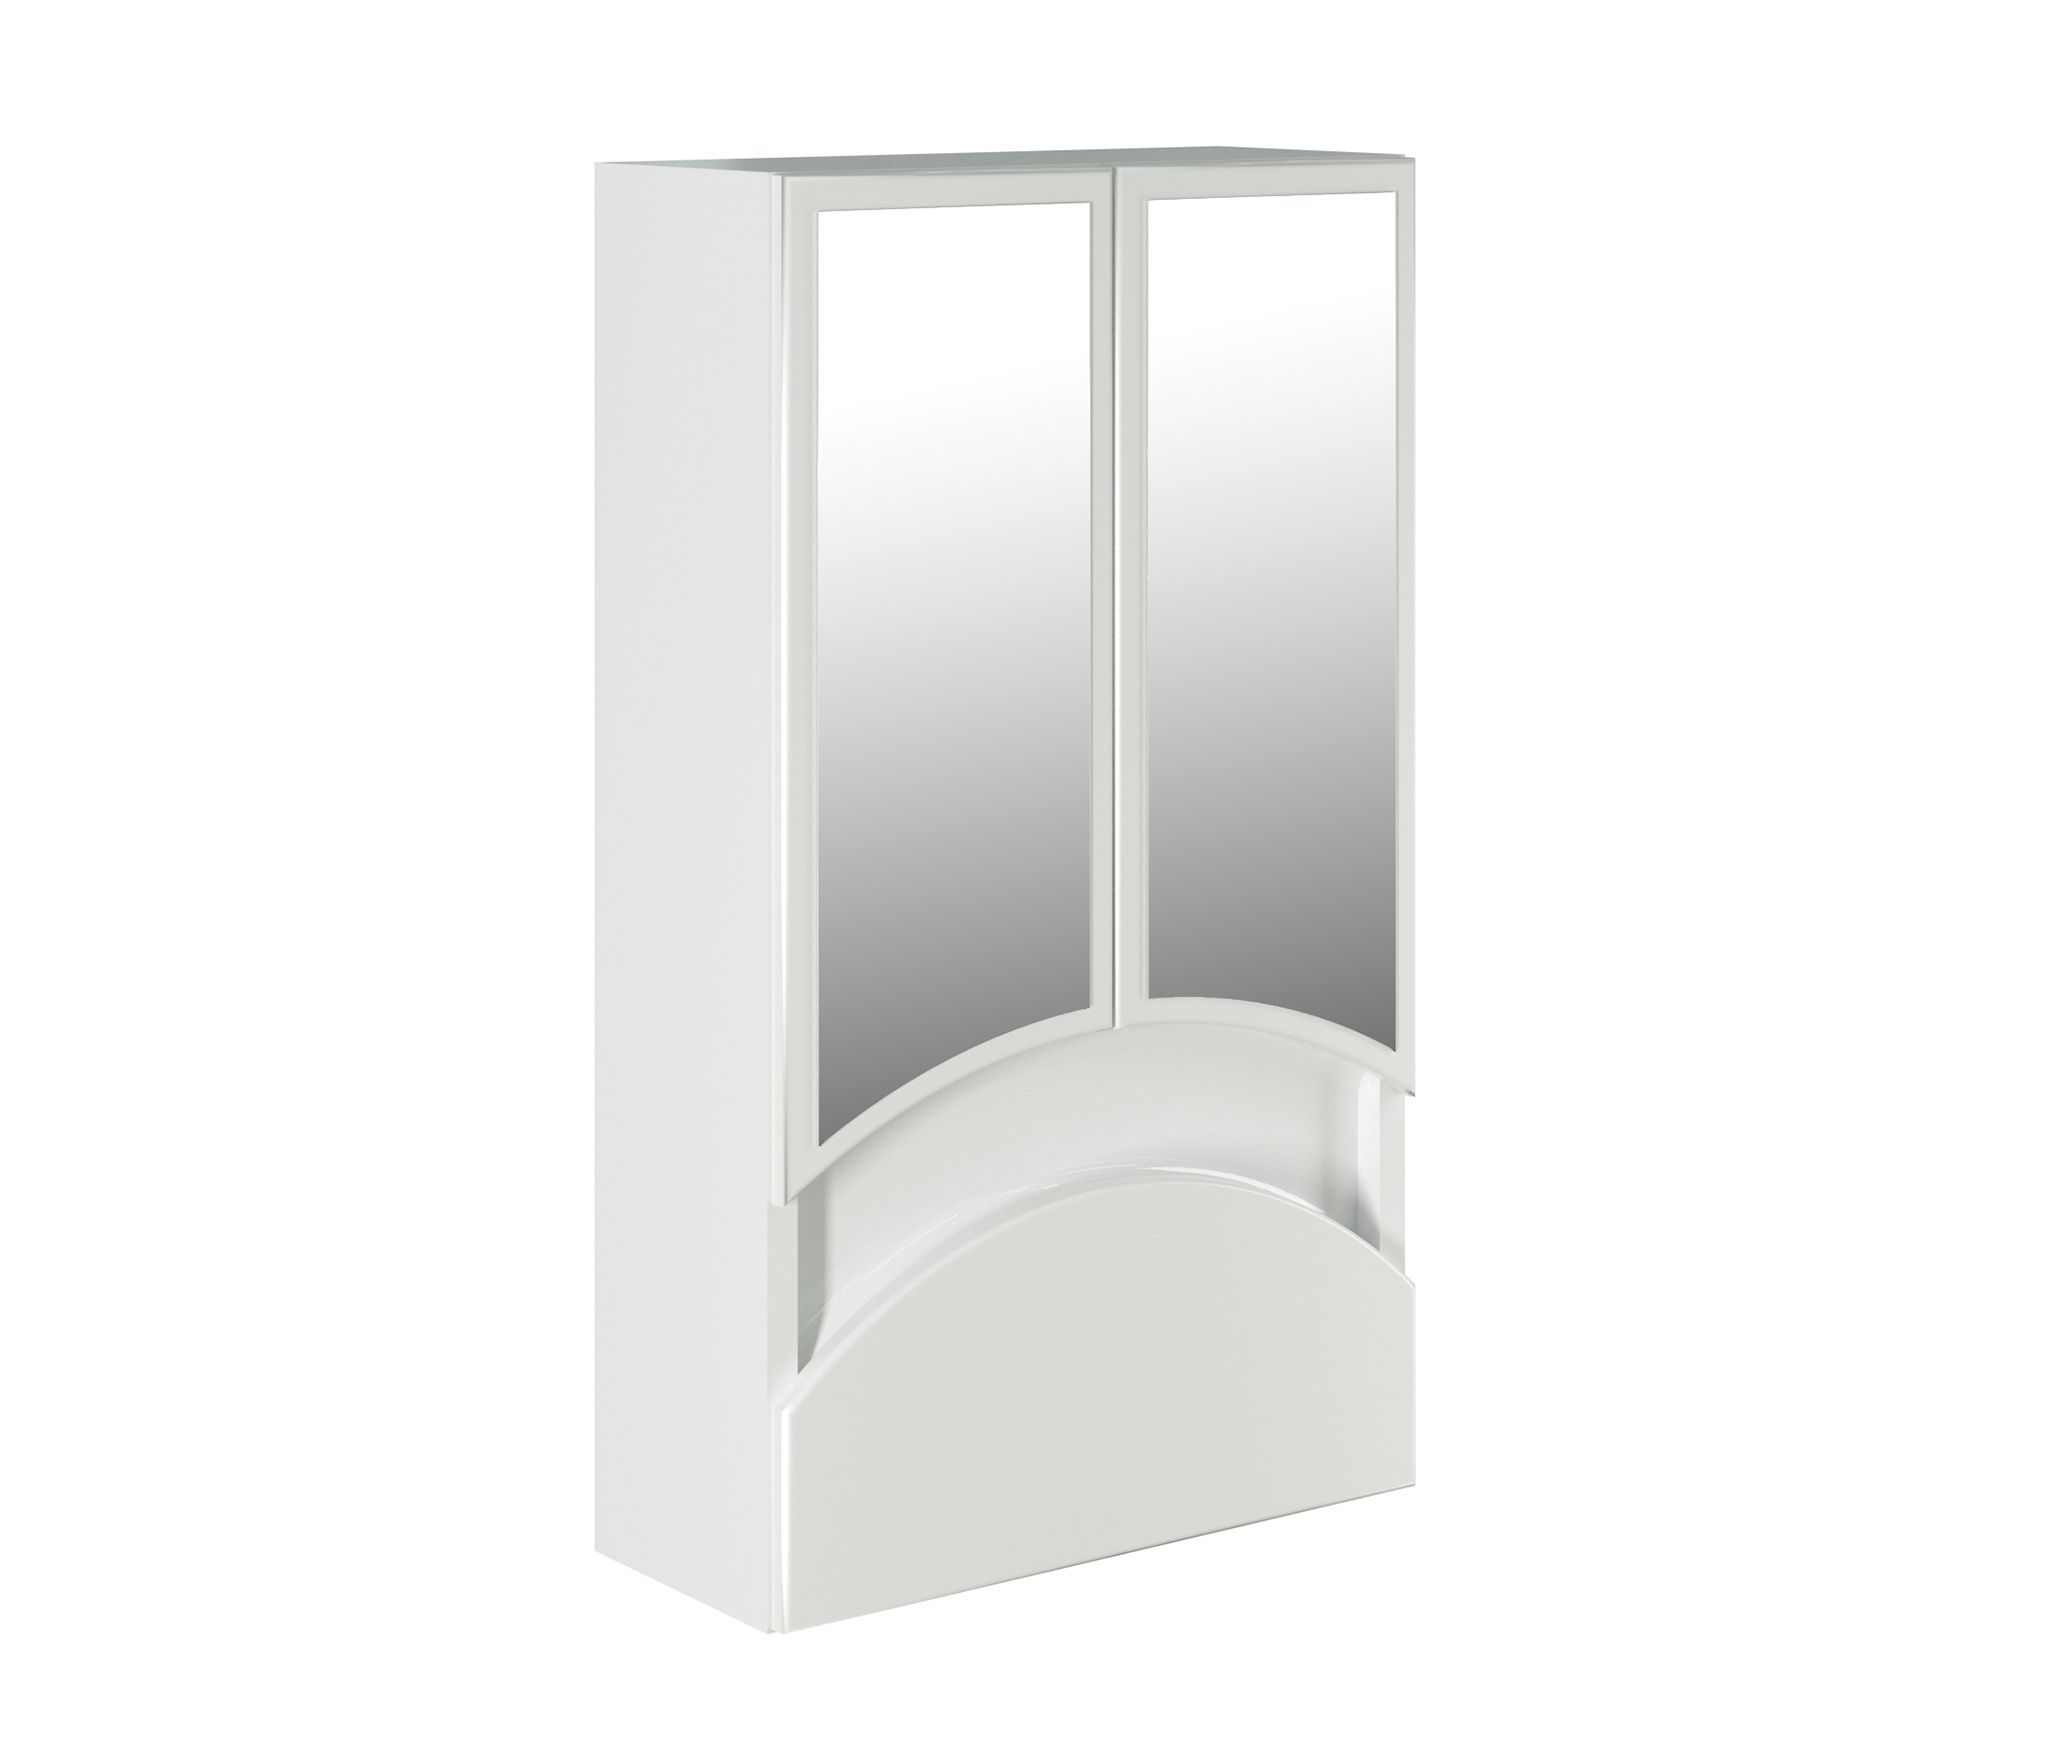 Зеркало-шкаф навесной без подсветки MIXLINE Радуга-46 белый (522473)